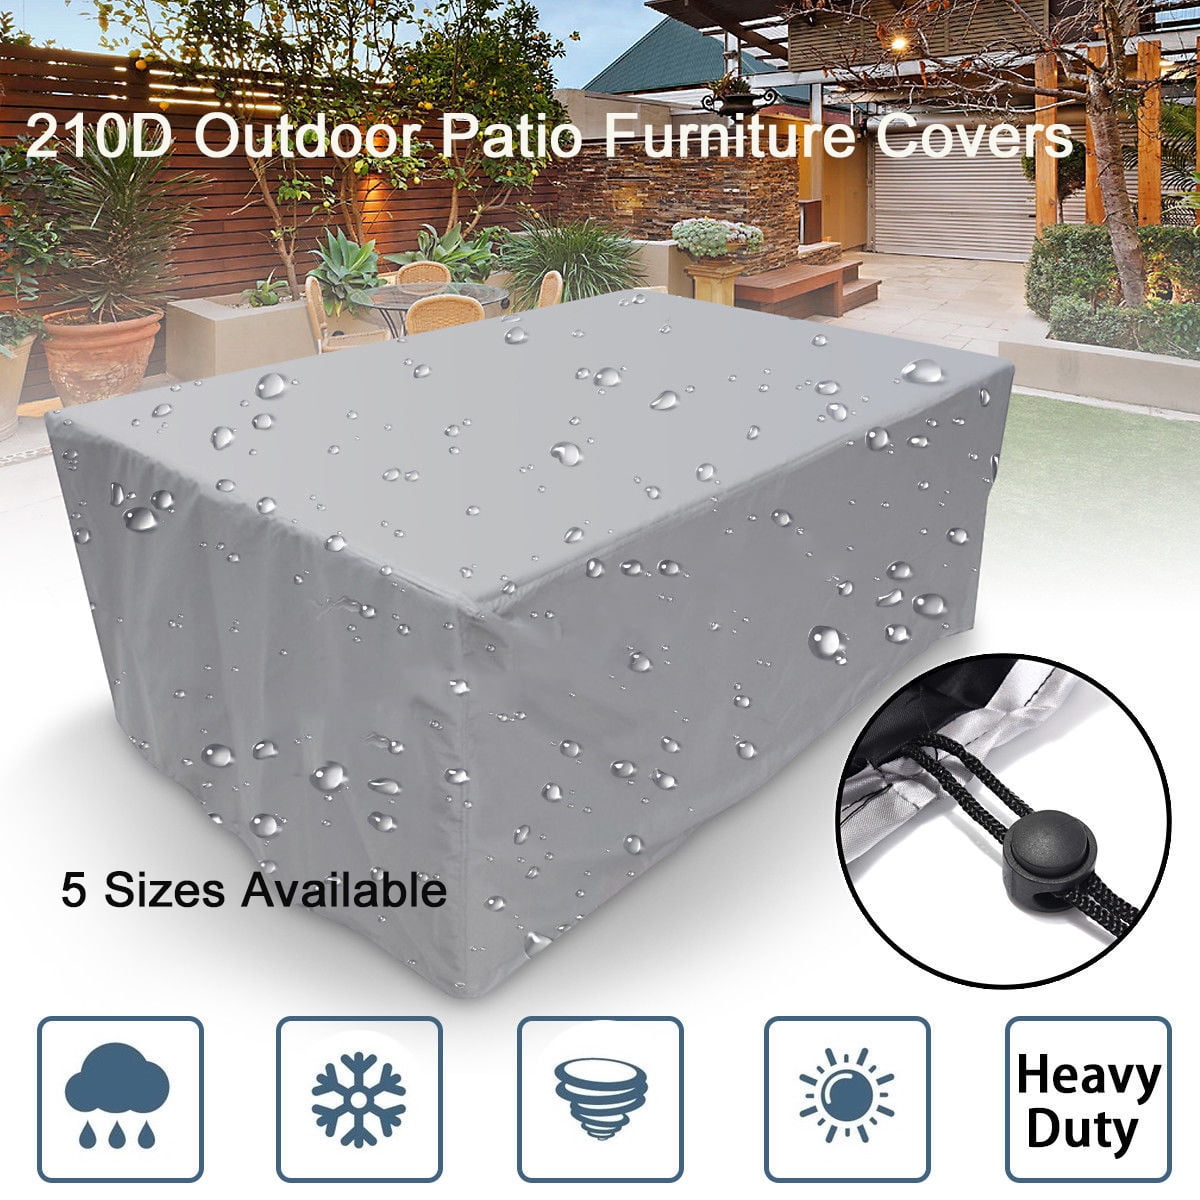 Rectangular Outdoor Patio Snow Proof, Best Waterproof Outdoor Patio Furniture Covers